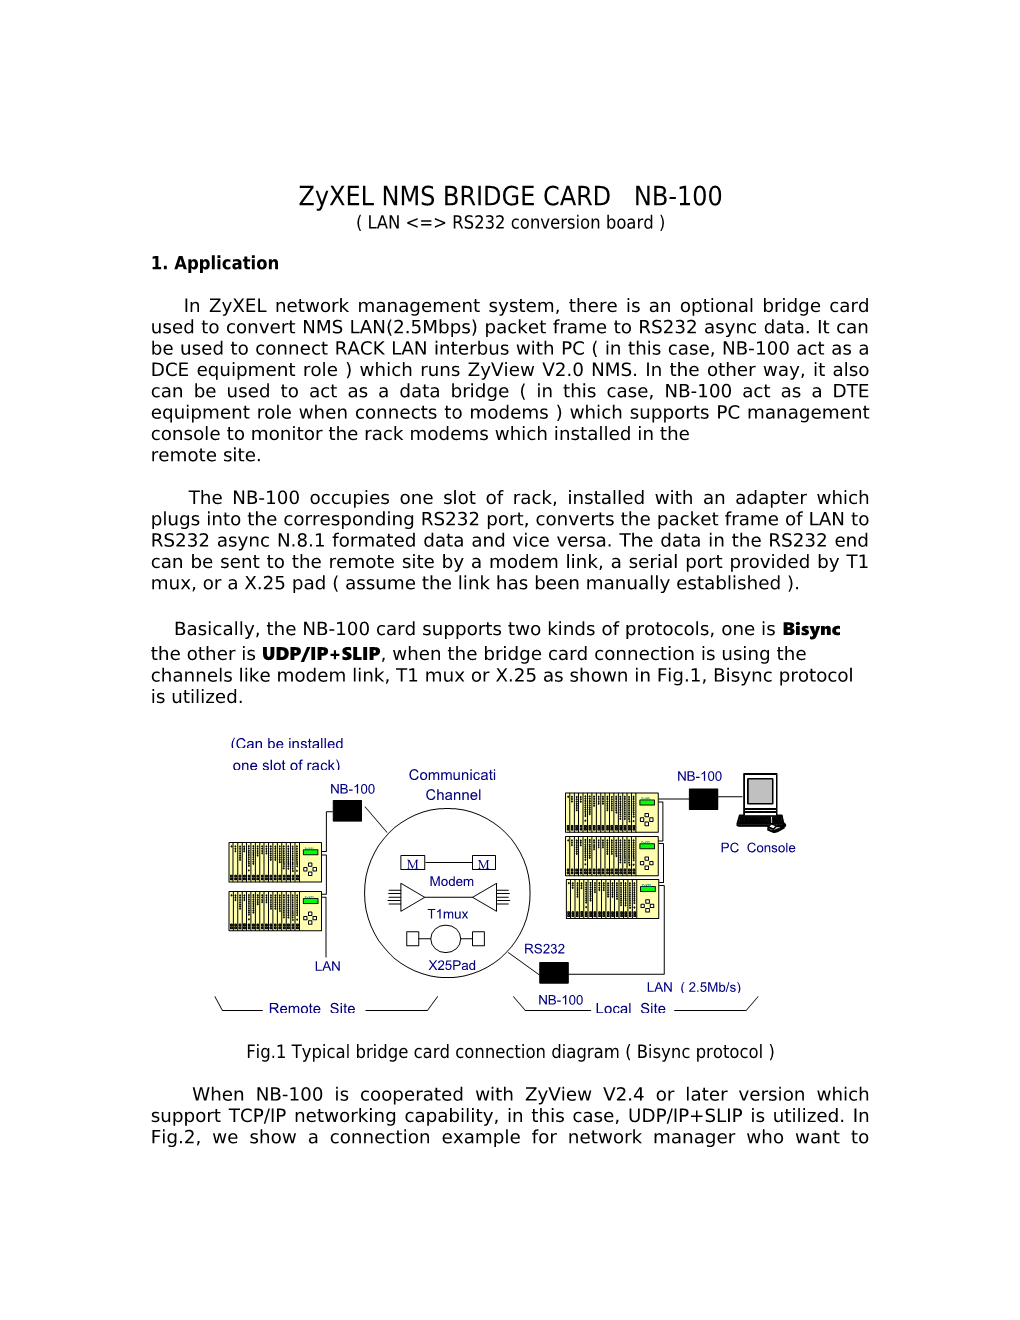 Zyxel NMS BRIDGE CARD NB-100